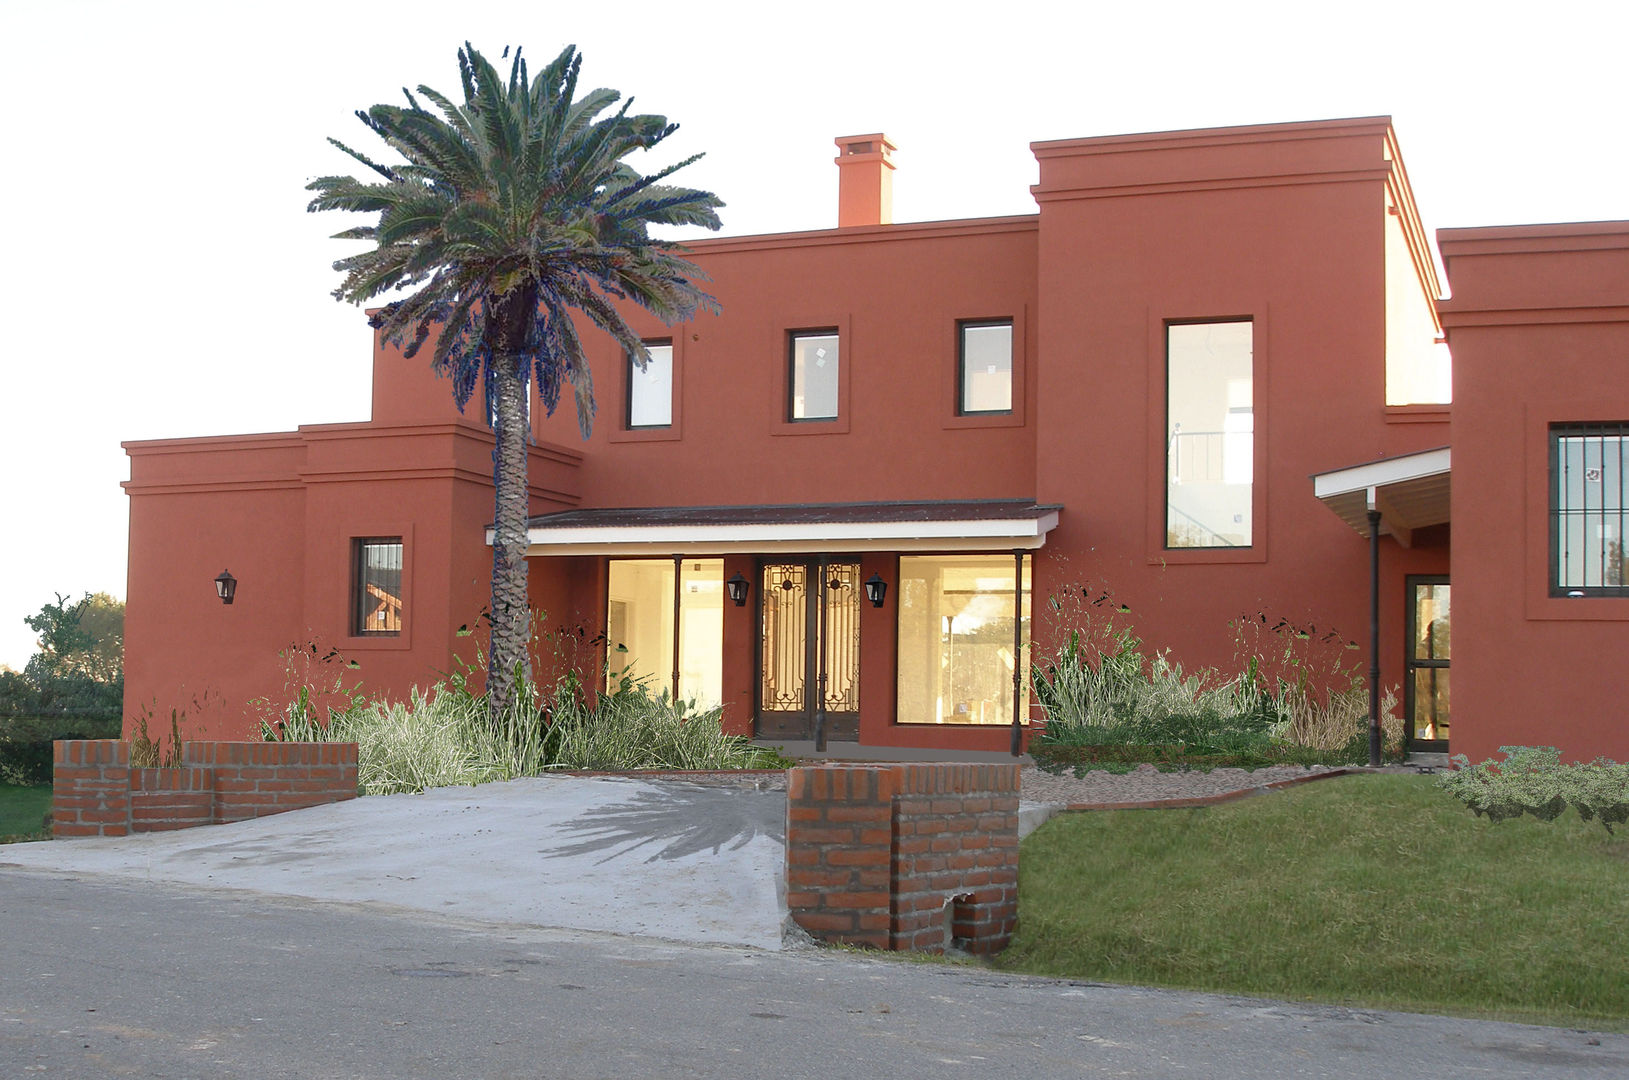 Casa en Haras San Pablo Estudio Dillon Terzaghi Arquitectura - Pilar Casas unifamiliares Ladrillos